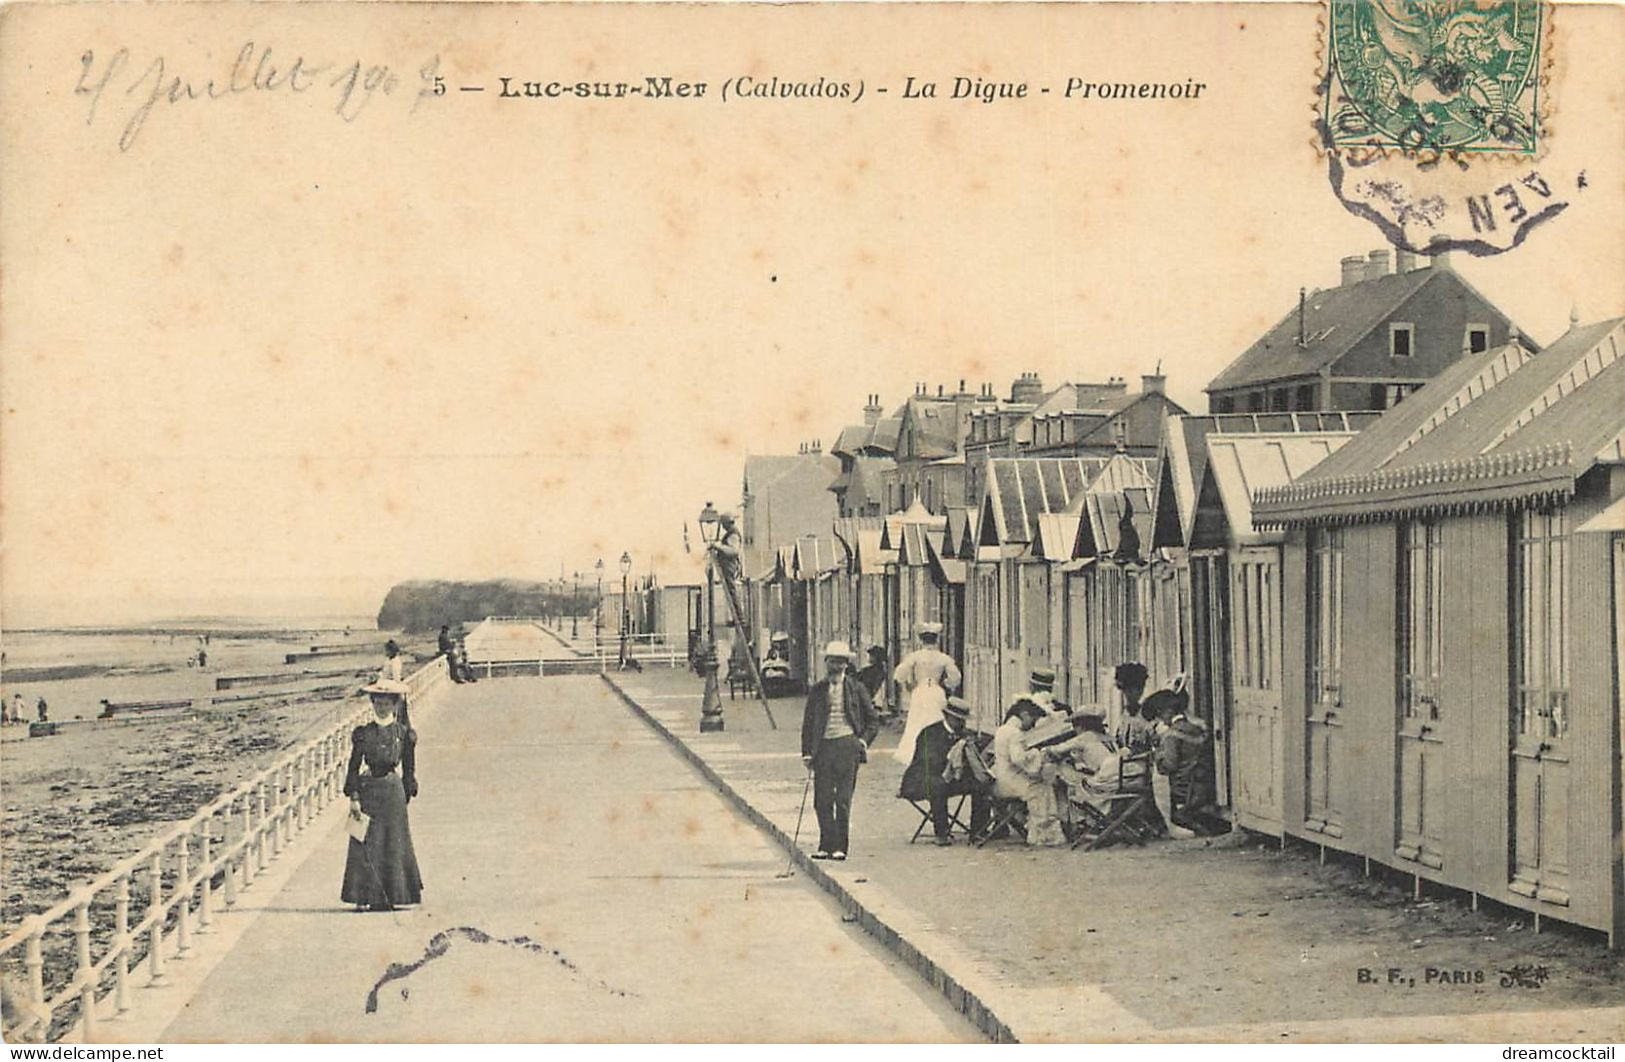 (S) Superbe LOT n°18 de 50 cartes postales anciennes Françaises régionalisme